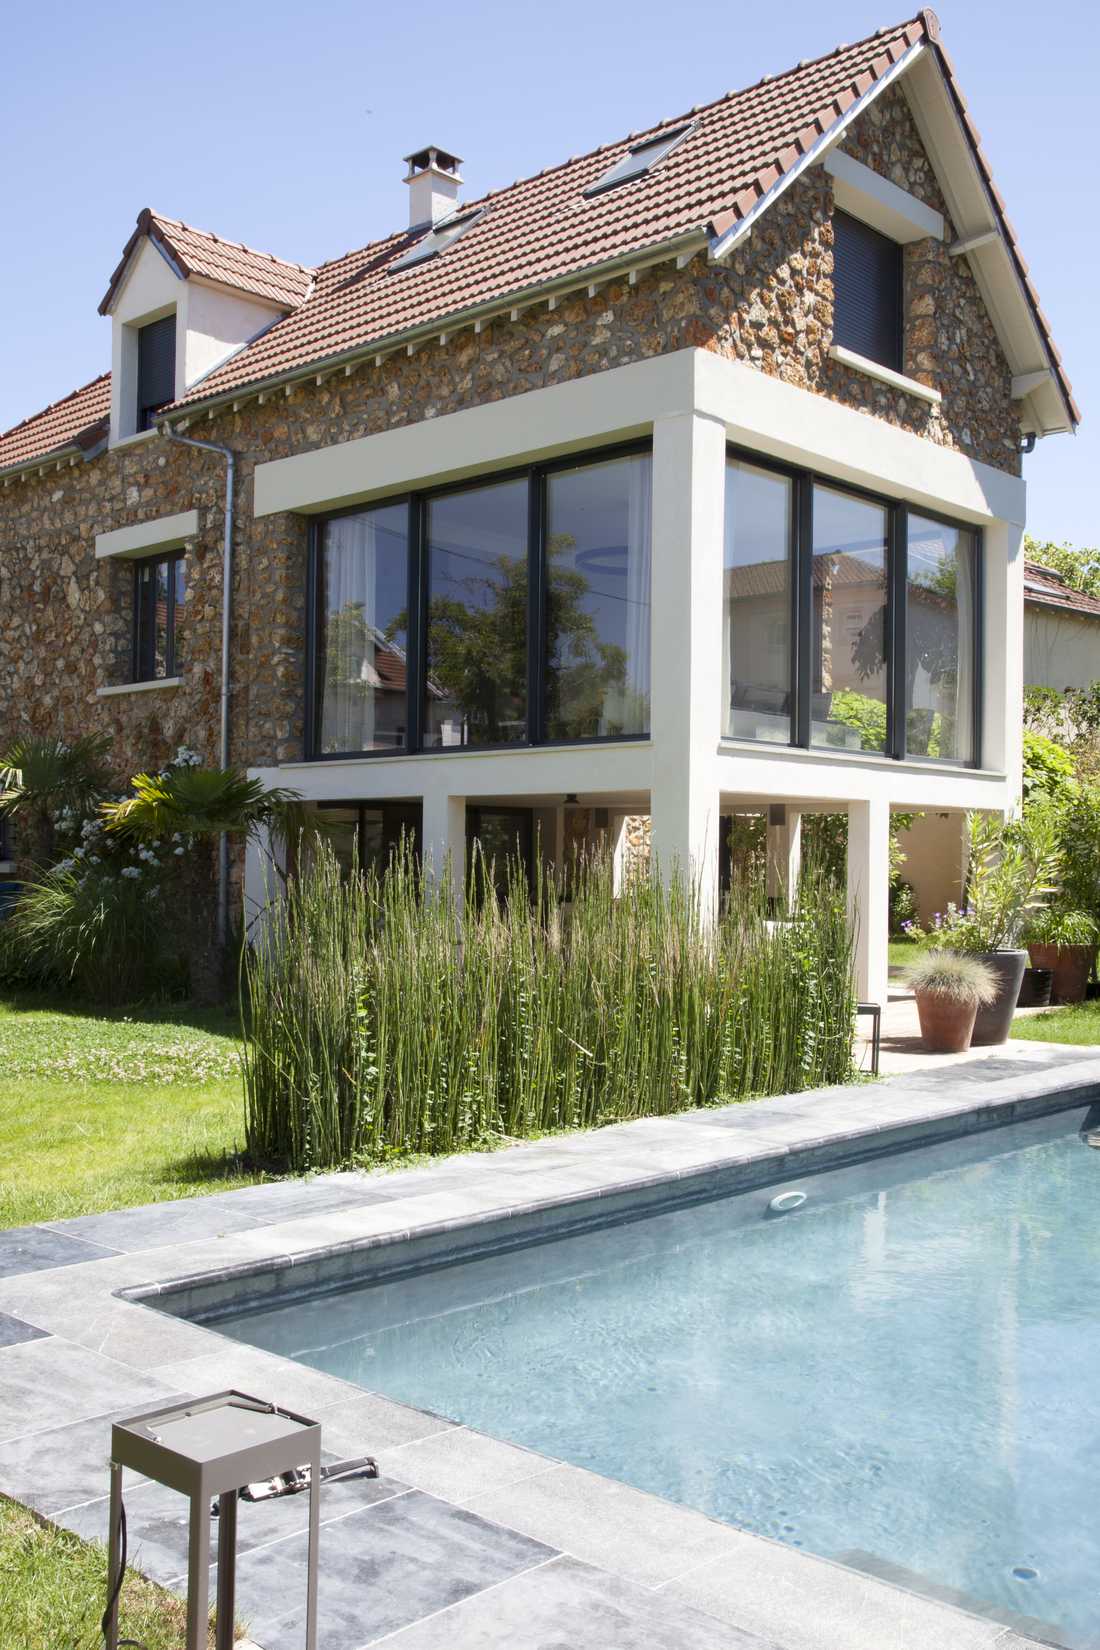 Extension et surélevation d'une maison de type meuliere à Aix-en-Provence